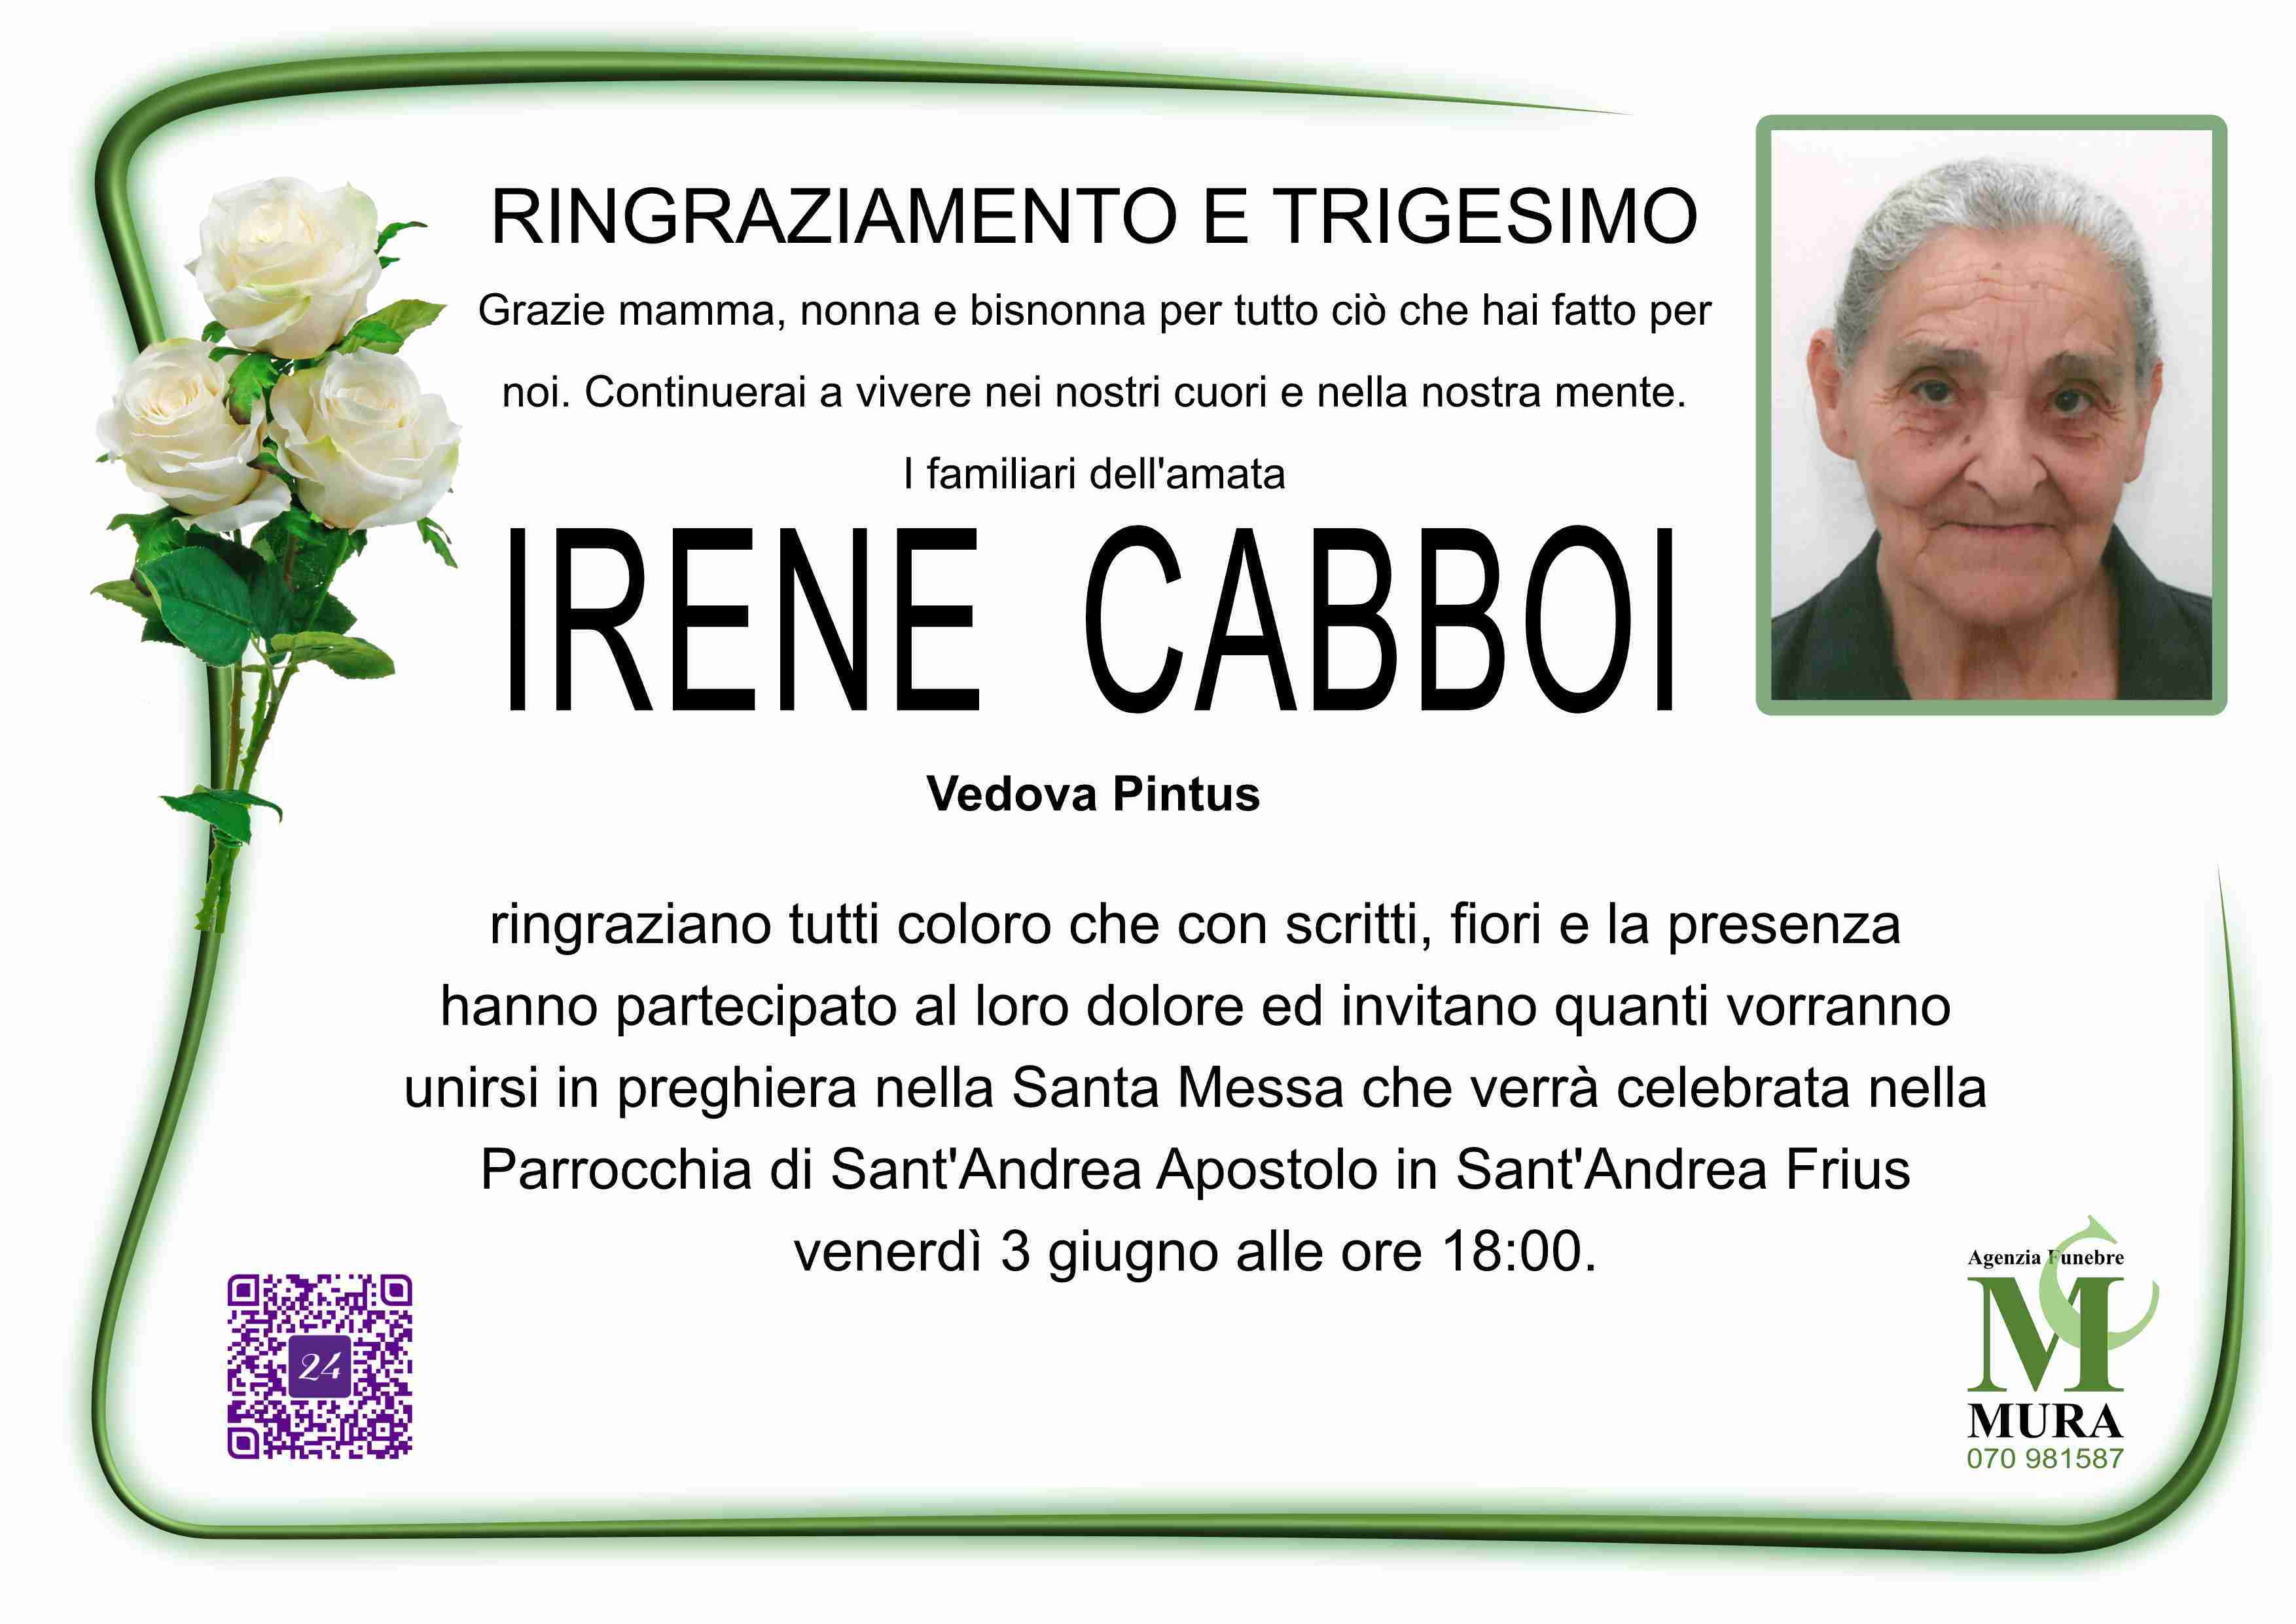 Irene Cabboi